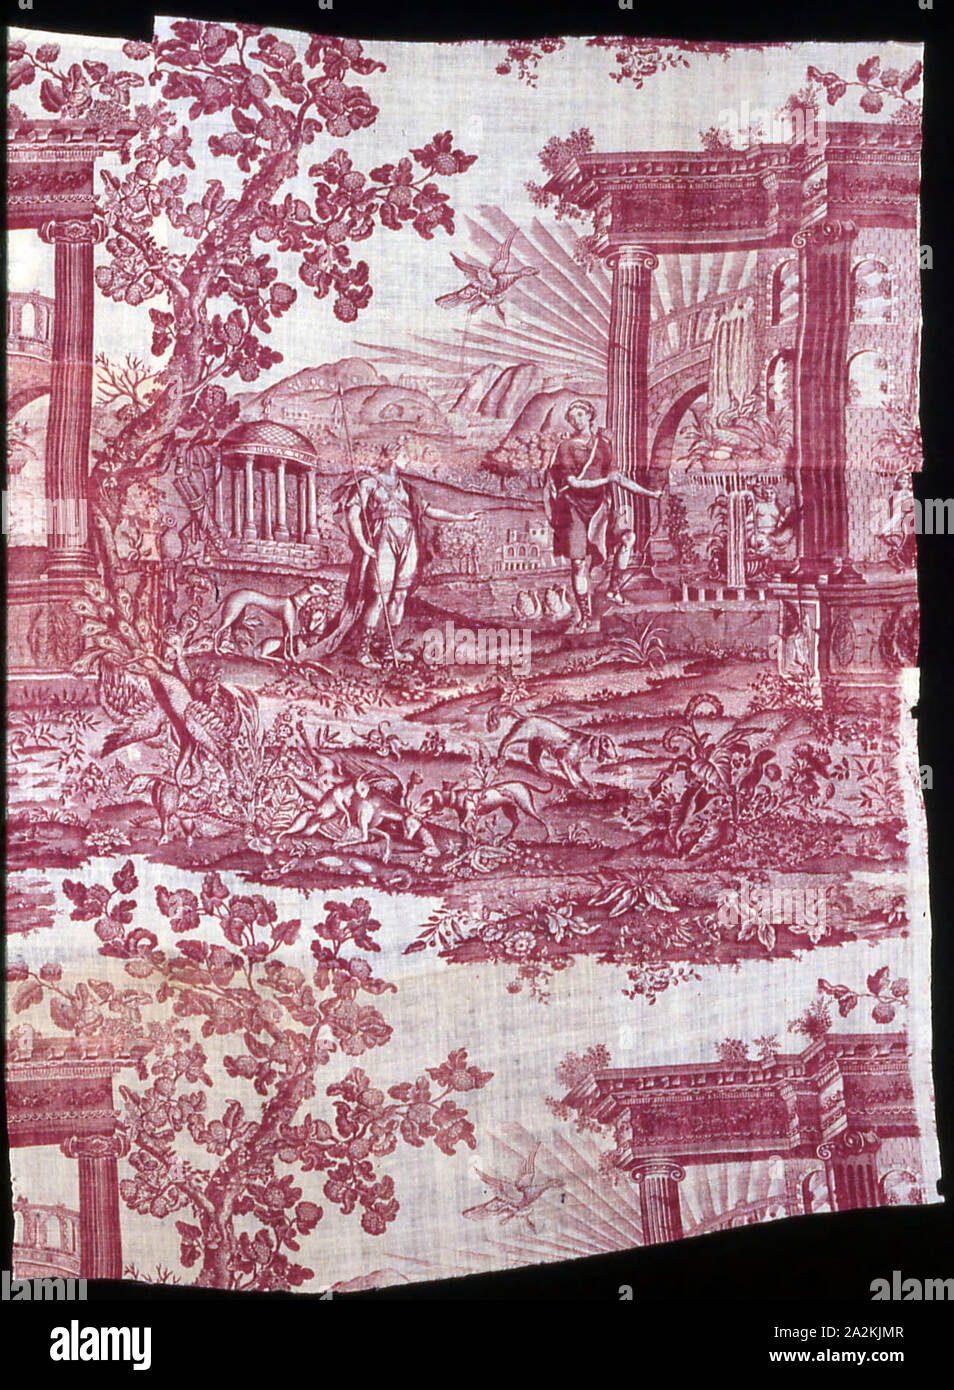 Le Temple de Diane (ameublement), 1775/85, fabriqué par Bromley Hall (anglais, 1694-1823), en Angleterre, Middlesex, peuplier, Middlesex, du coton, à armure toile, imprimé en taille-douce, 130,6 x 101,9 cm (51 3/8 x 40 1/8 in Banque D'Images